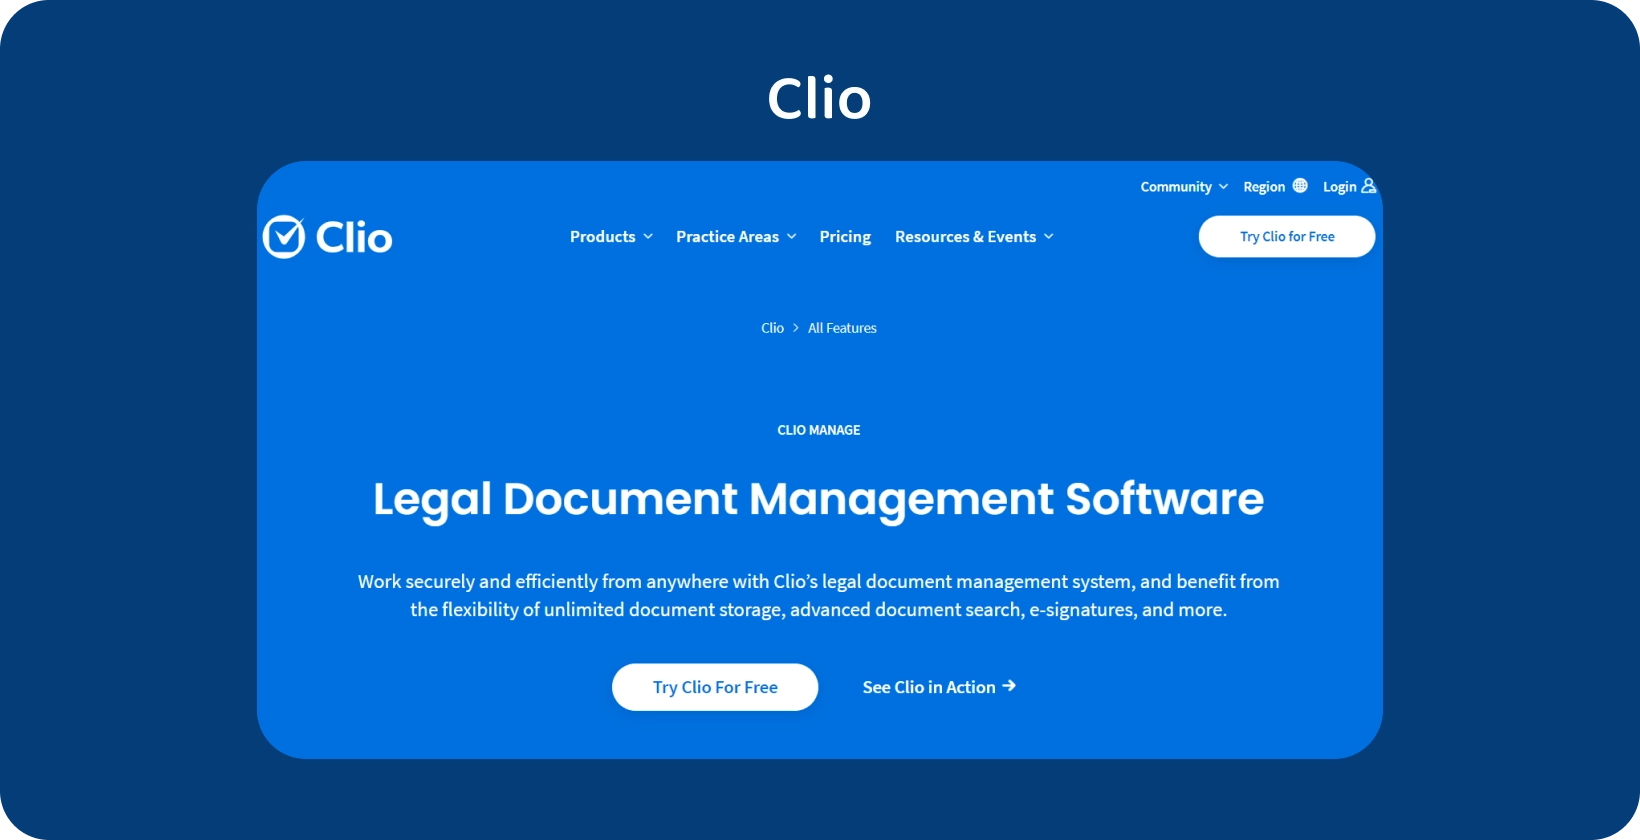 La interfaz de usuario de Clio muestra su software de gestión de documentos legales, optimizando el manejo de registros organizados.